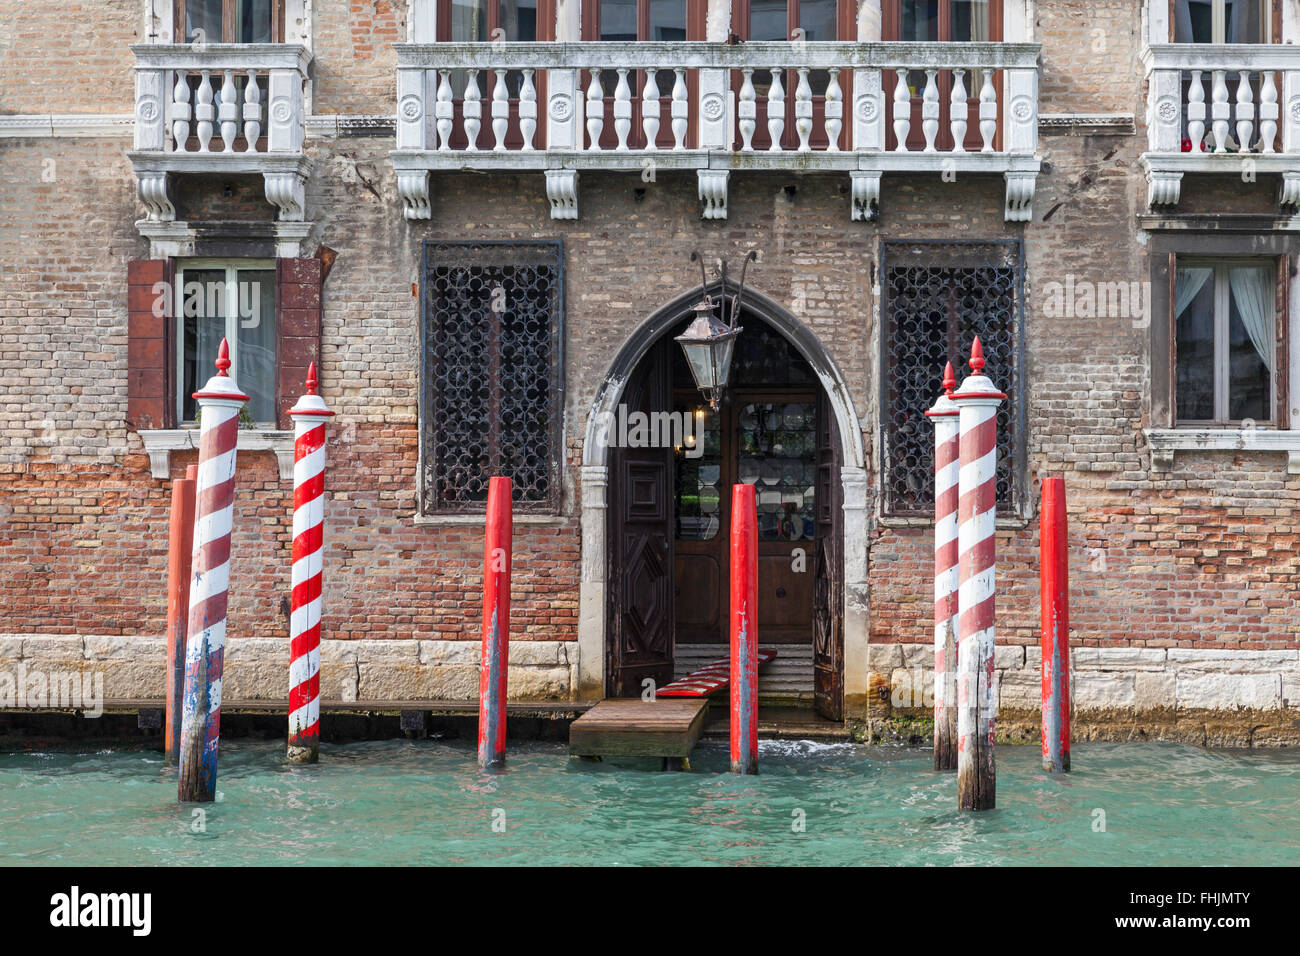 Piano di atterraggio di un vecchio edificio in mattoni con un ingresso ad arco sul Canal Grande, Venezia, con posti d'ormeggio a strisce rosse e bianche Foto Stock